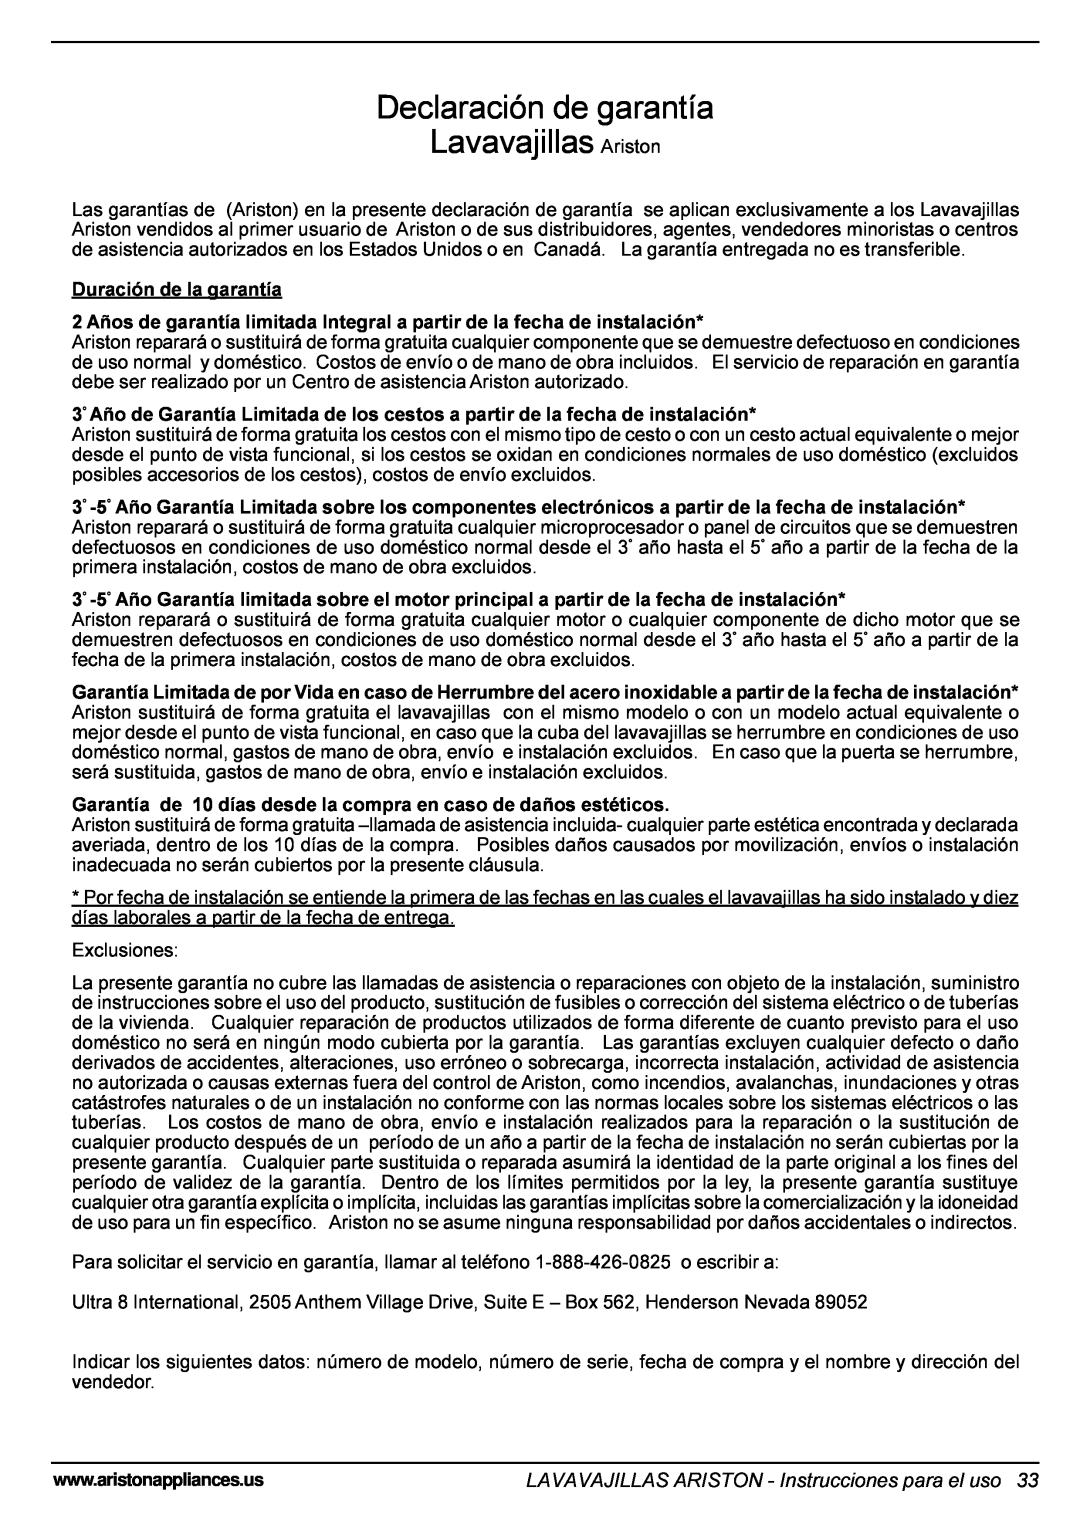 Ariston LI 700 S, LI 700 I Declaración de garantía Lavavajillas Ariston, LAVAVAJILLAS ARISTON - Instrucciones para el uso 